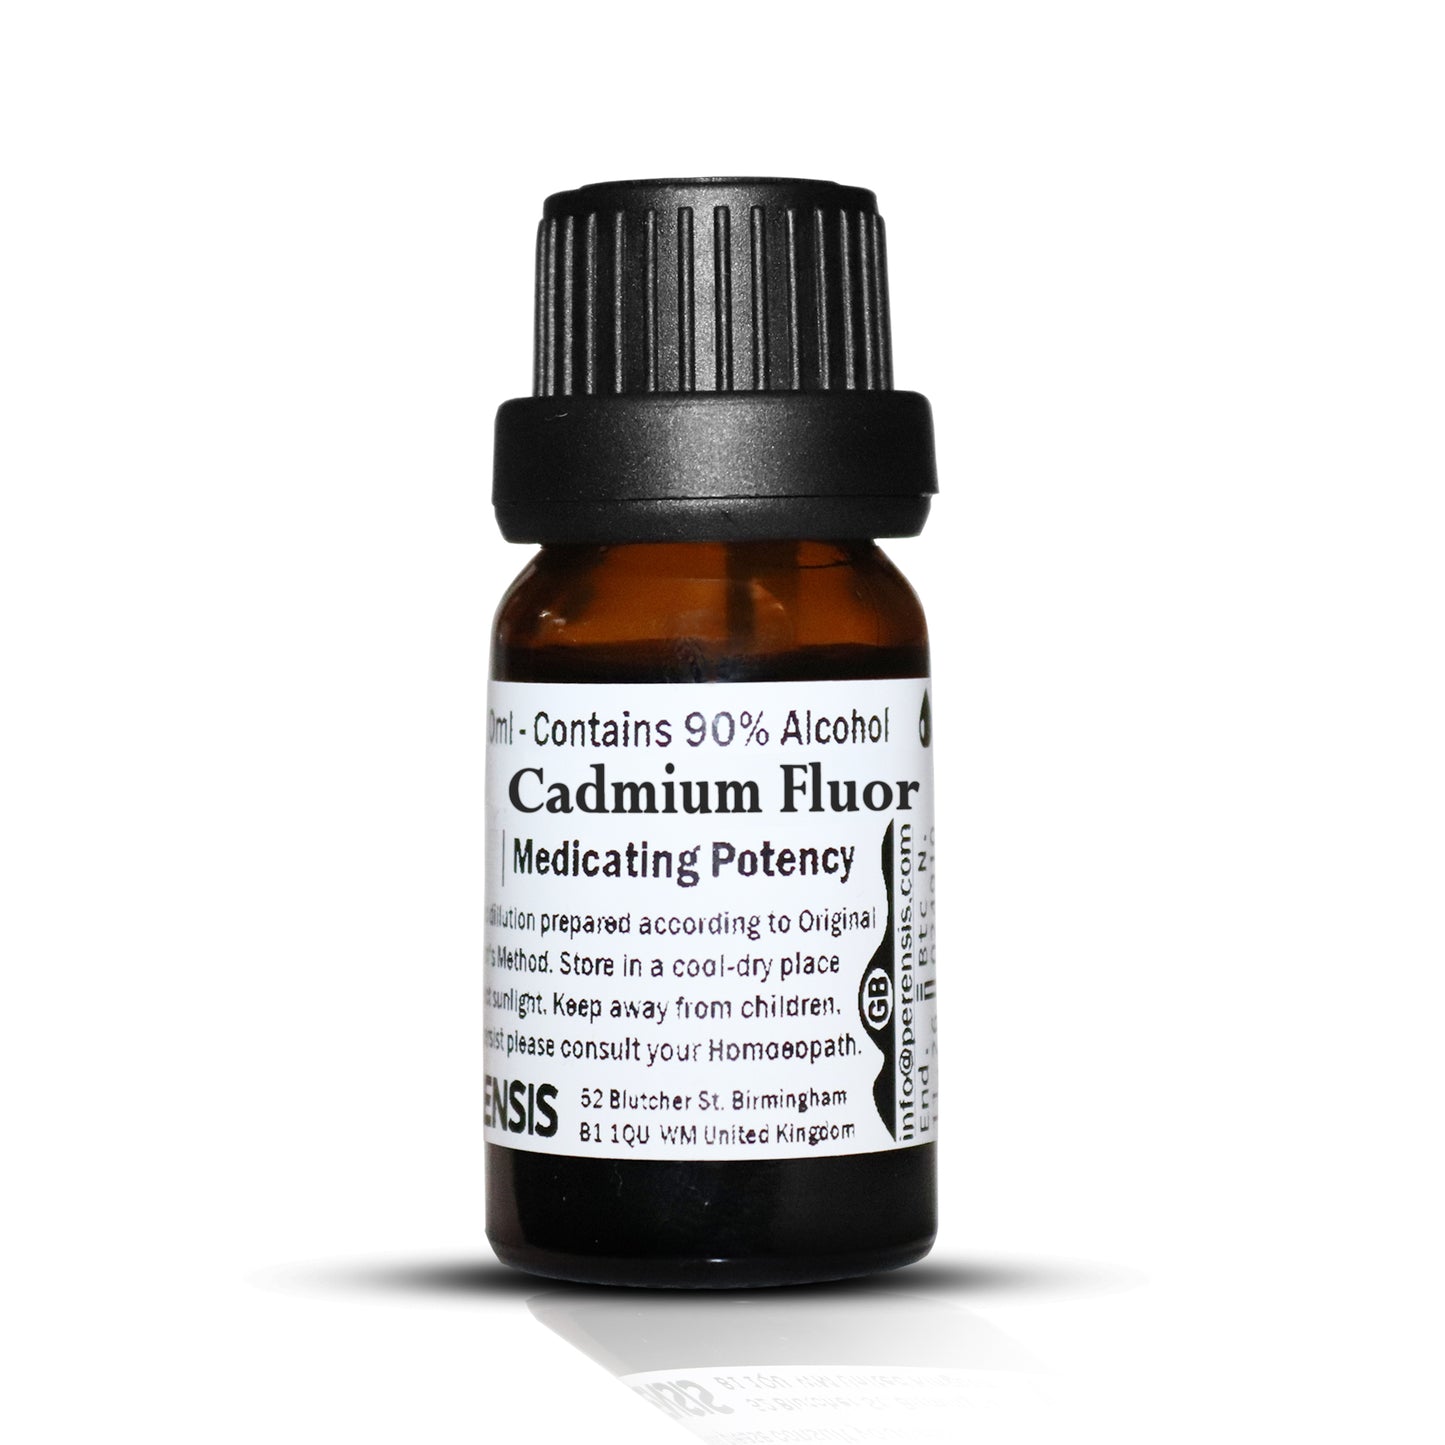 Cadmium Fluor